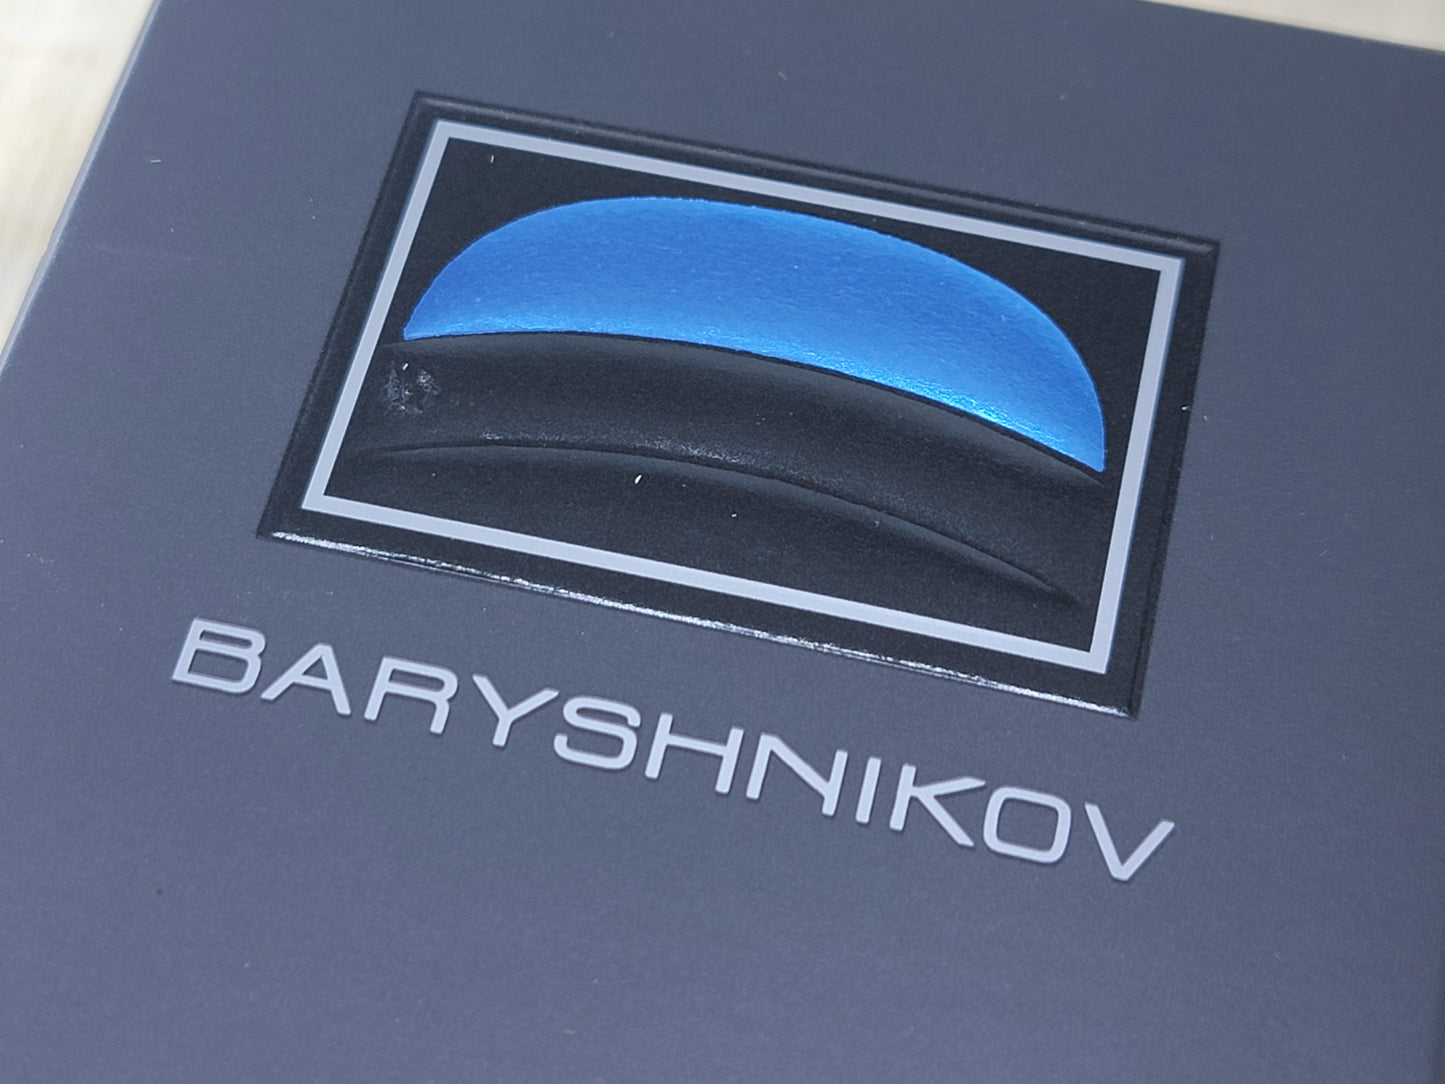 Baryshnikov Mikhail Baryshnikov for men EDT Spray 100 ml 3.4 oz, Vintage, Rare